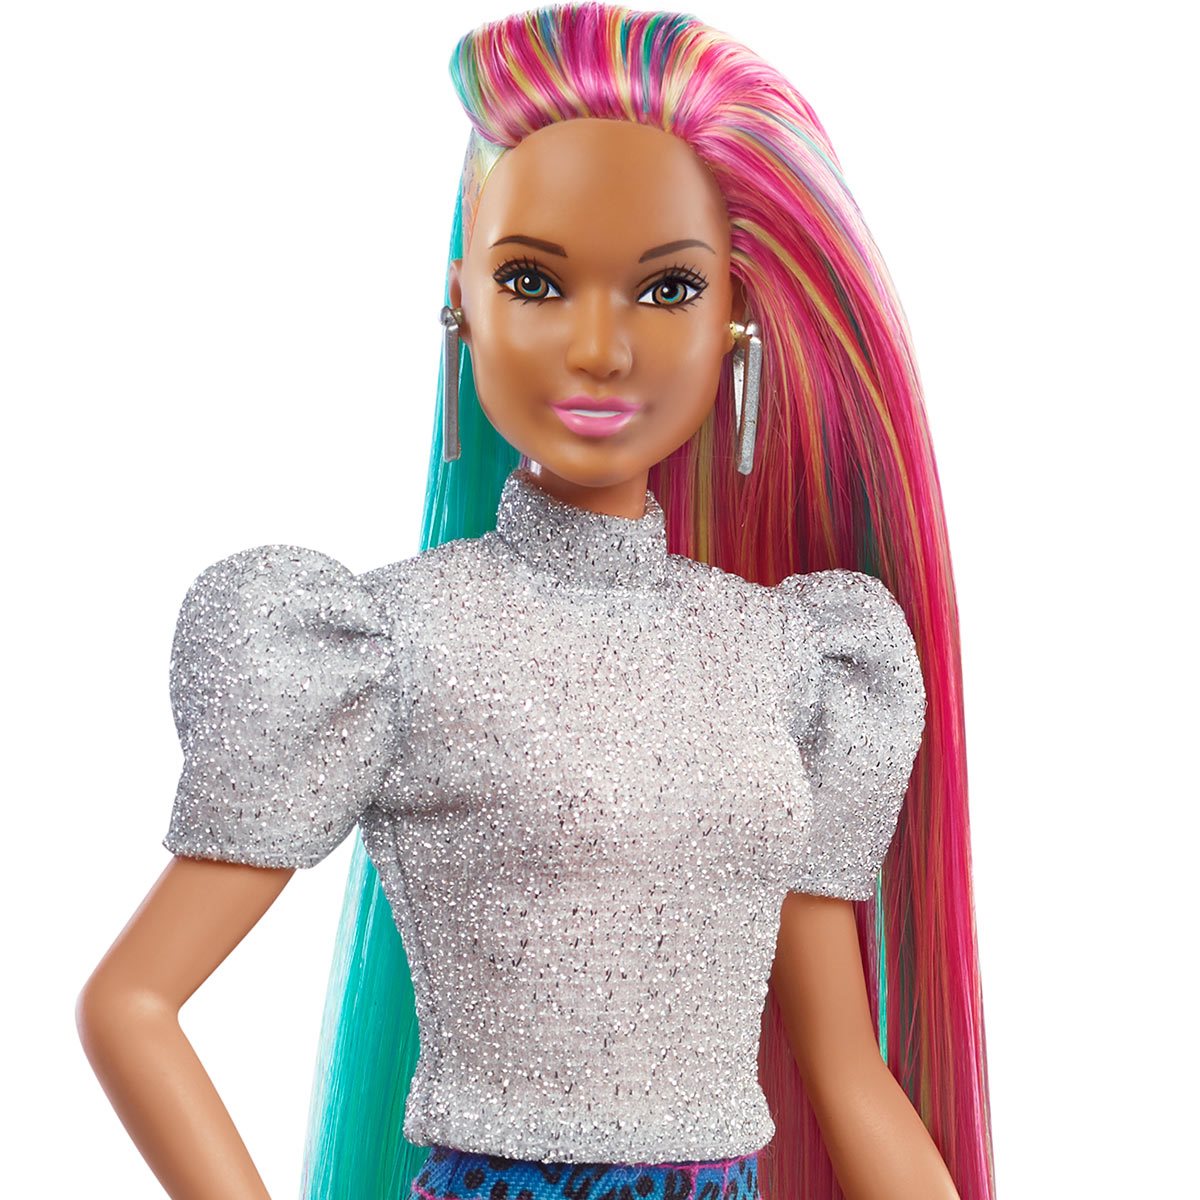 efterligne bro har taget fejl Barbie Leopard Rainbow Color Change Hair Doll with Brown Eyes